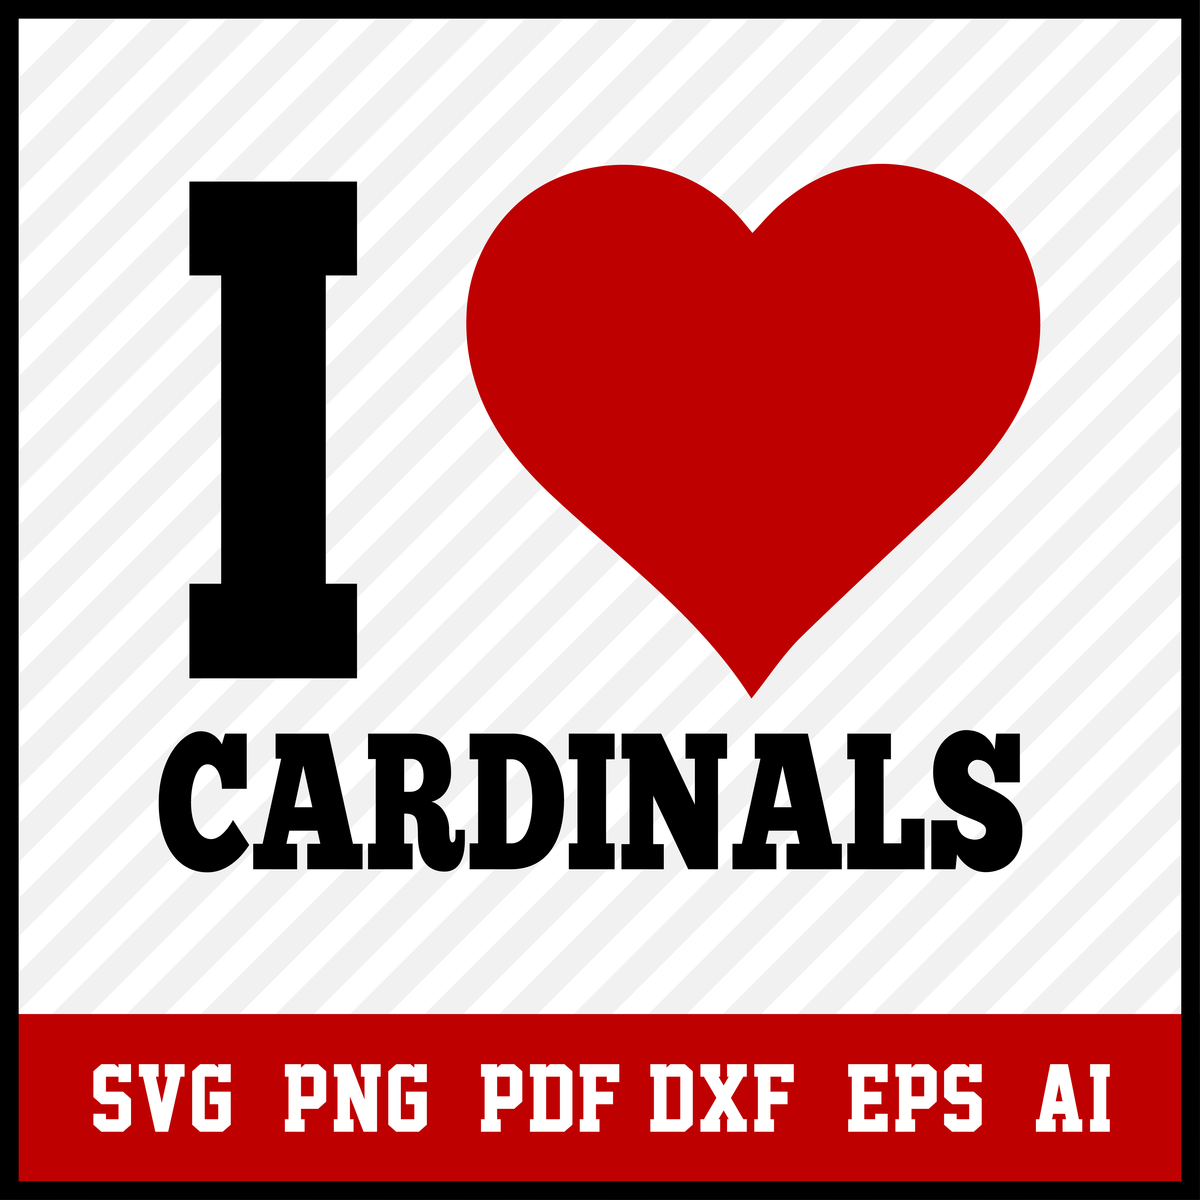 St Louis Cardinals Souvenirs Online, SAVE 30% 